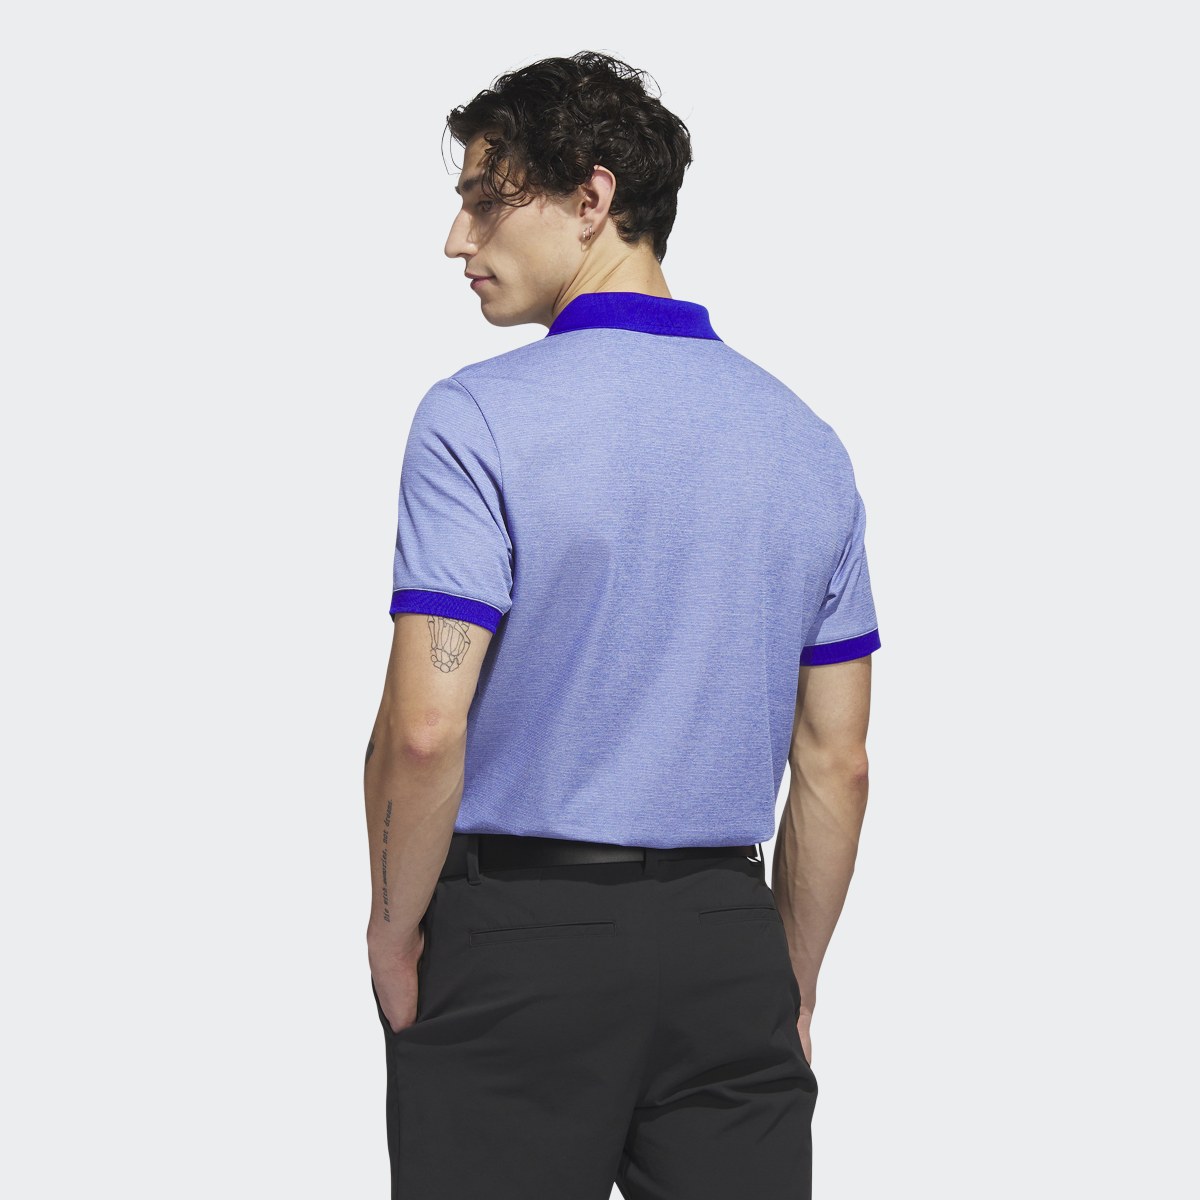 Adidas Ultimate365 No-Show Golf Polo Shirt. 8